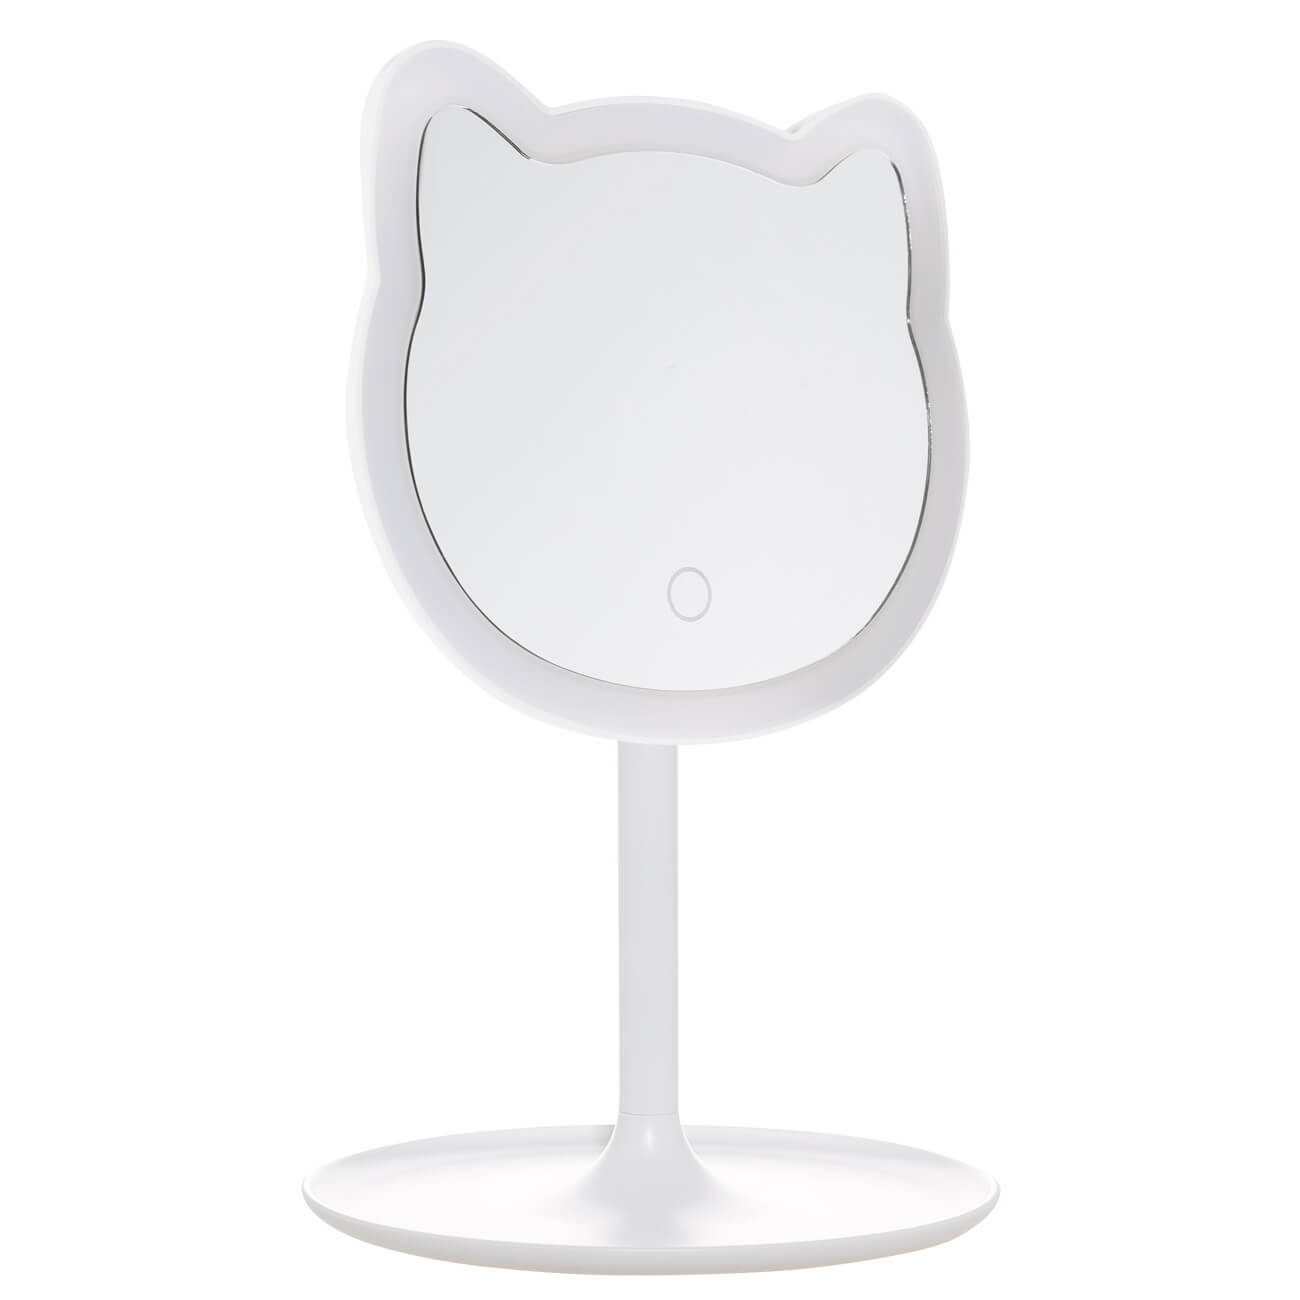 Зеркало настольное, 29 см, с подсветкой, на подставке, пластик, белое, Кот, Cat настольное косметическое зеркало vanstore